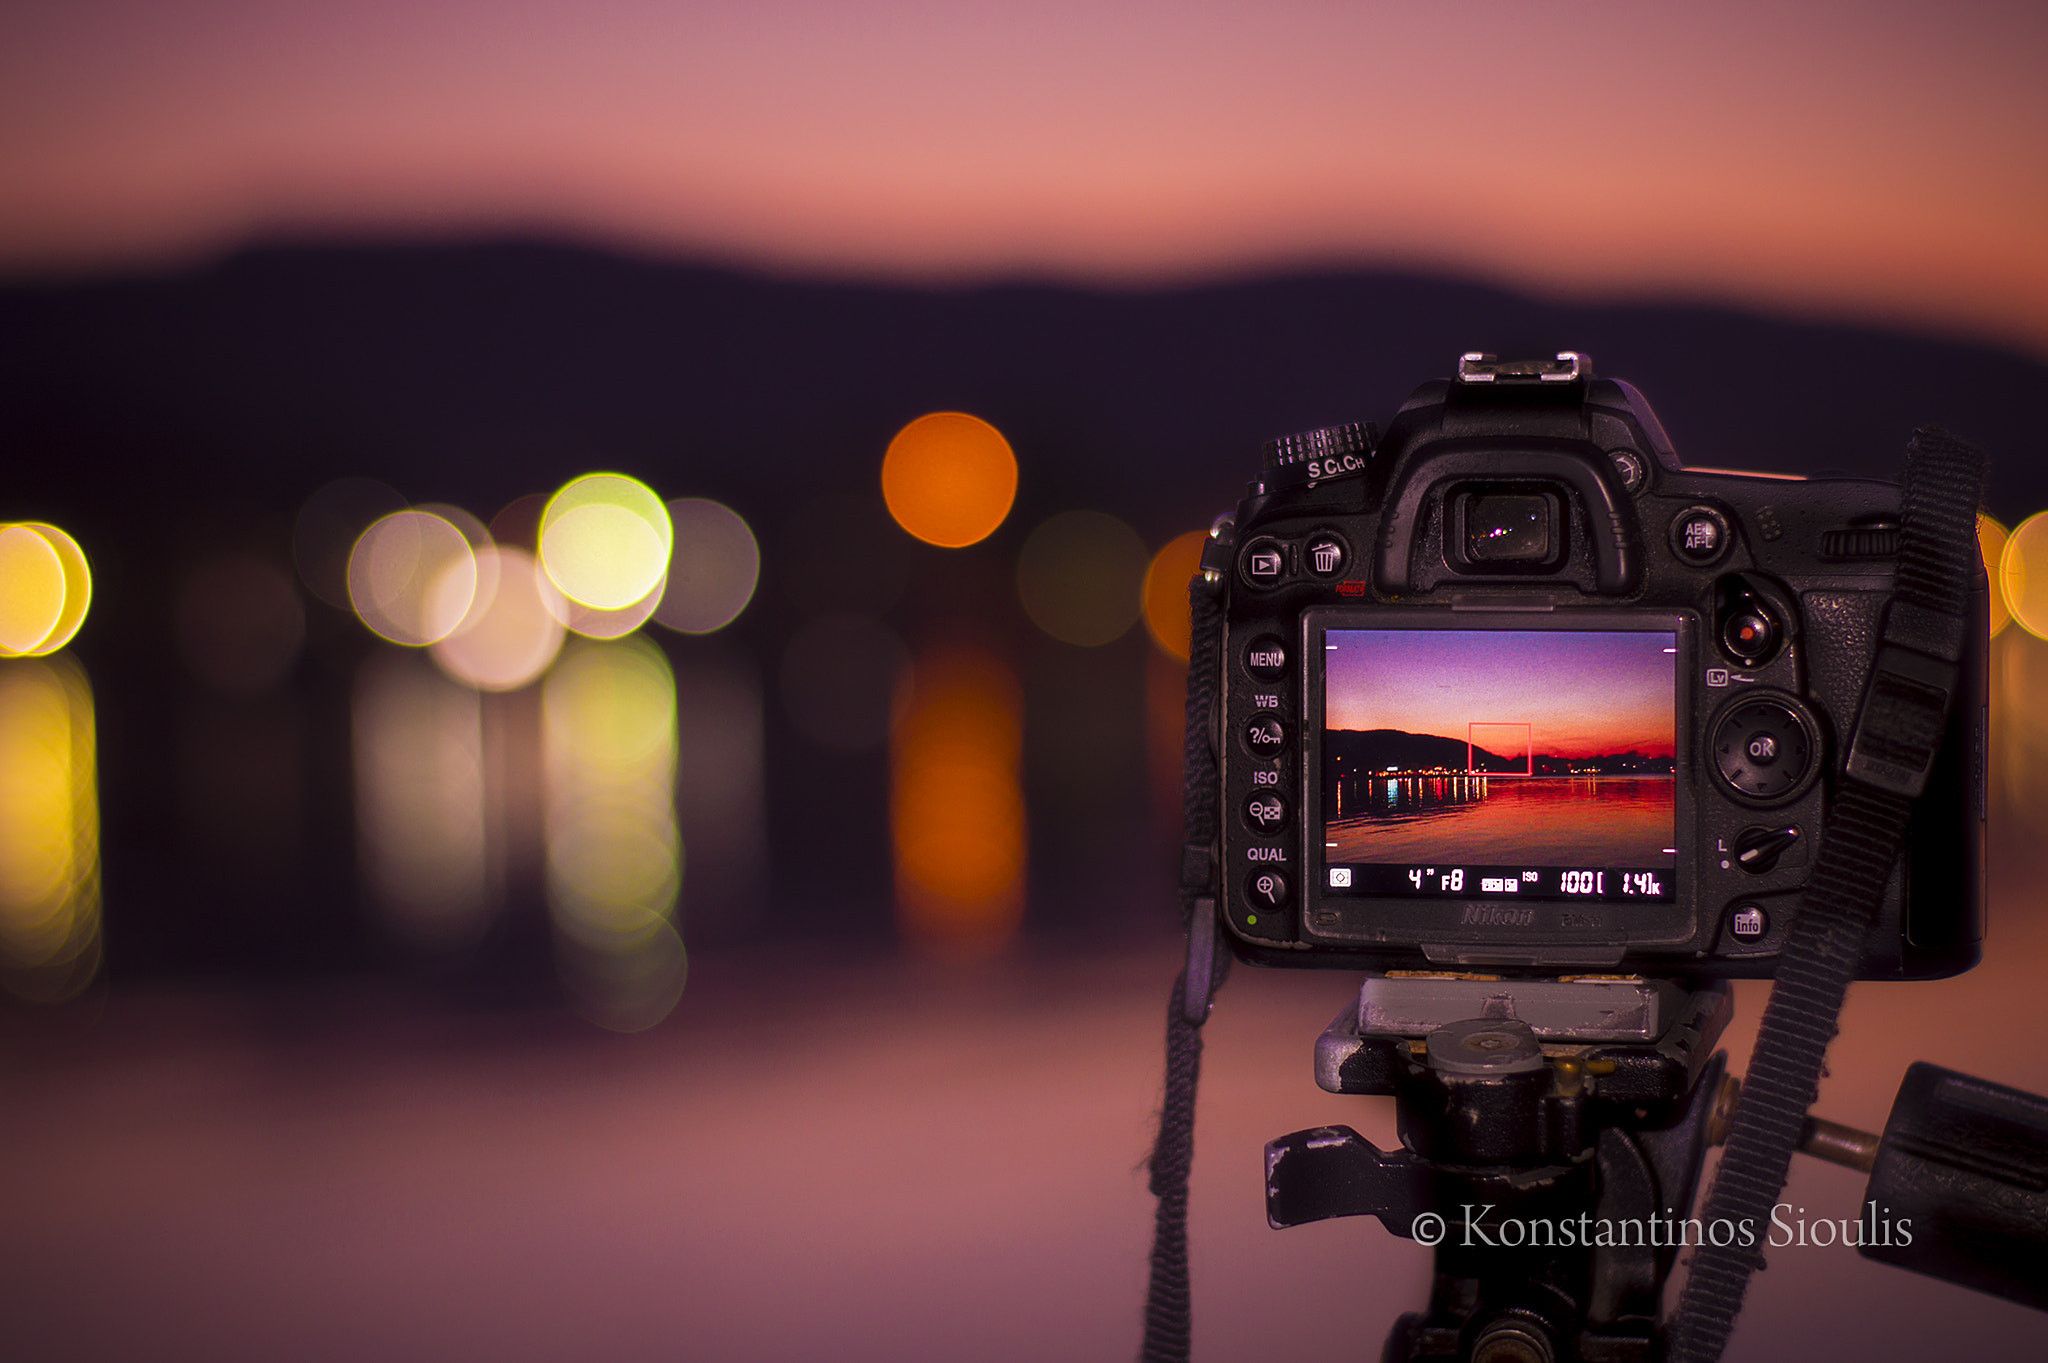 Nikon D3200 + AF-S DX VR Zoom-Nikkor 18-55mm f/3.5-5.6G + 2.8x sample photo